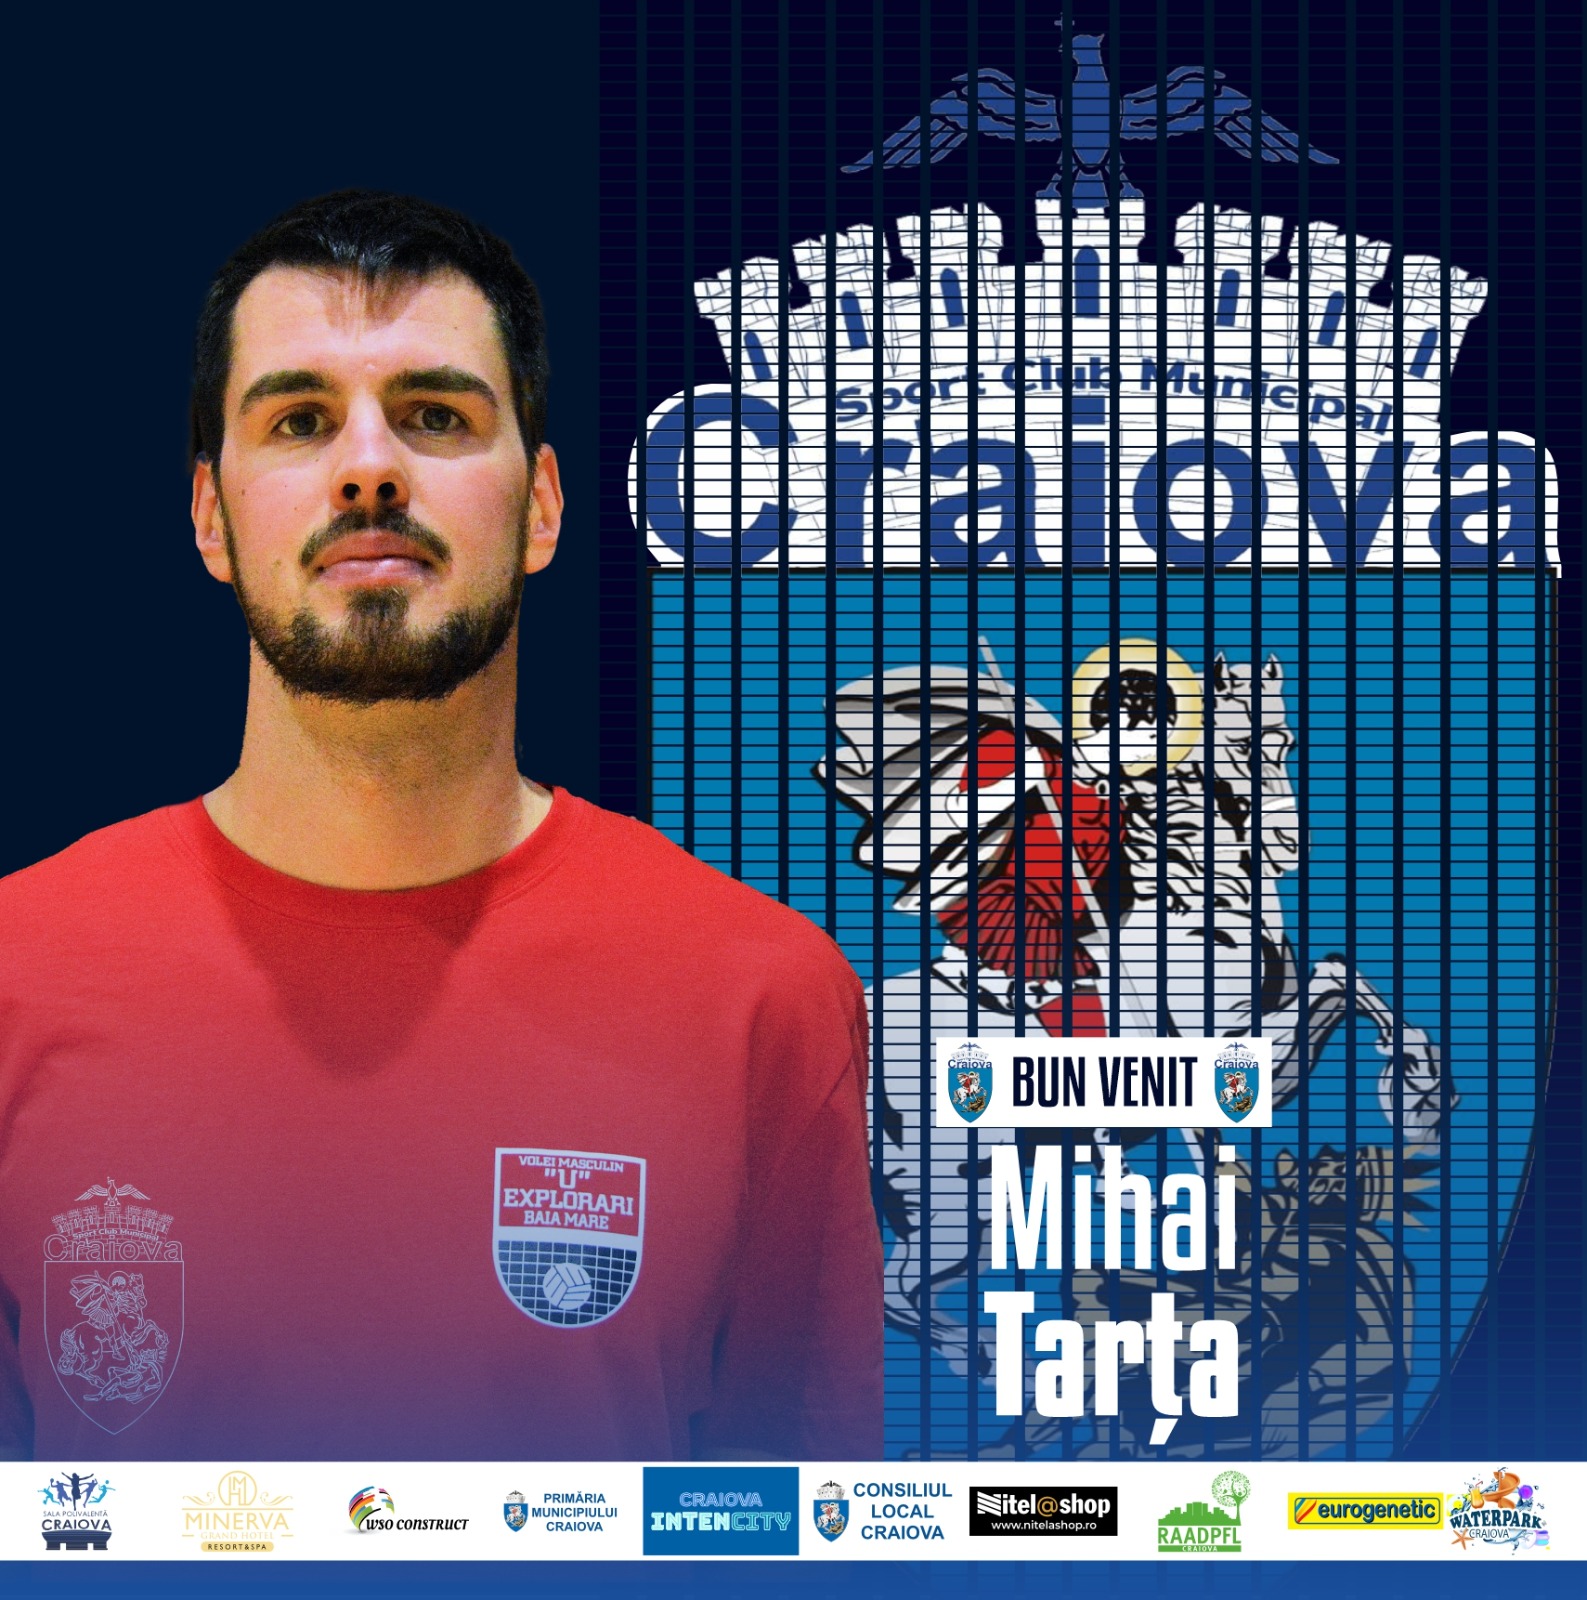 OFICIAL I Bun venit, Mihai Tarța! 